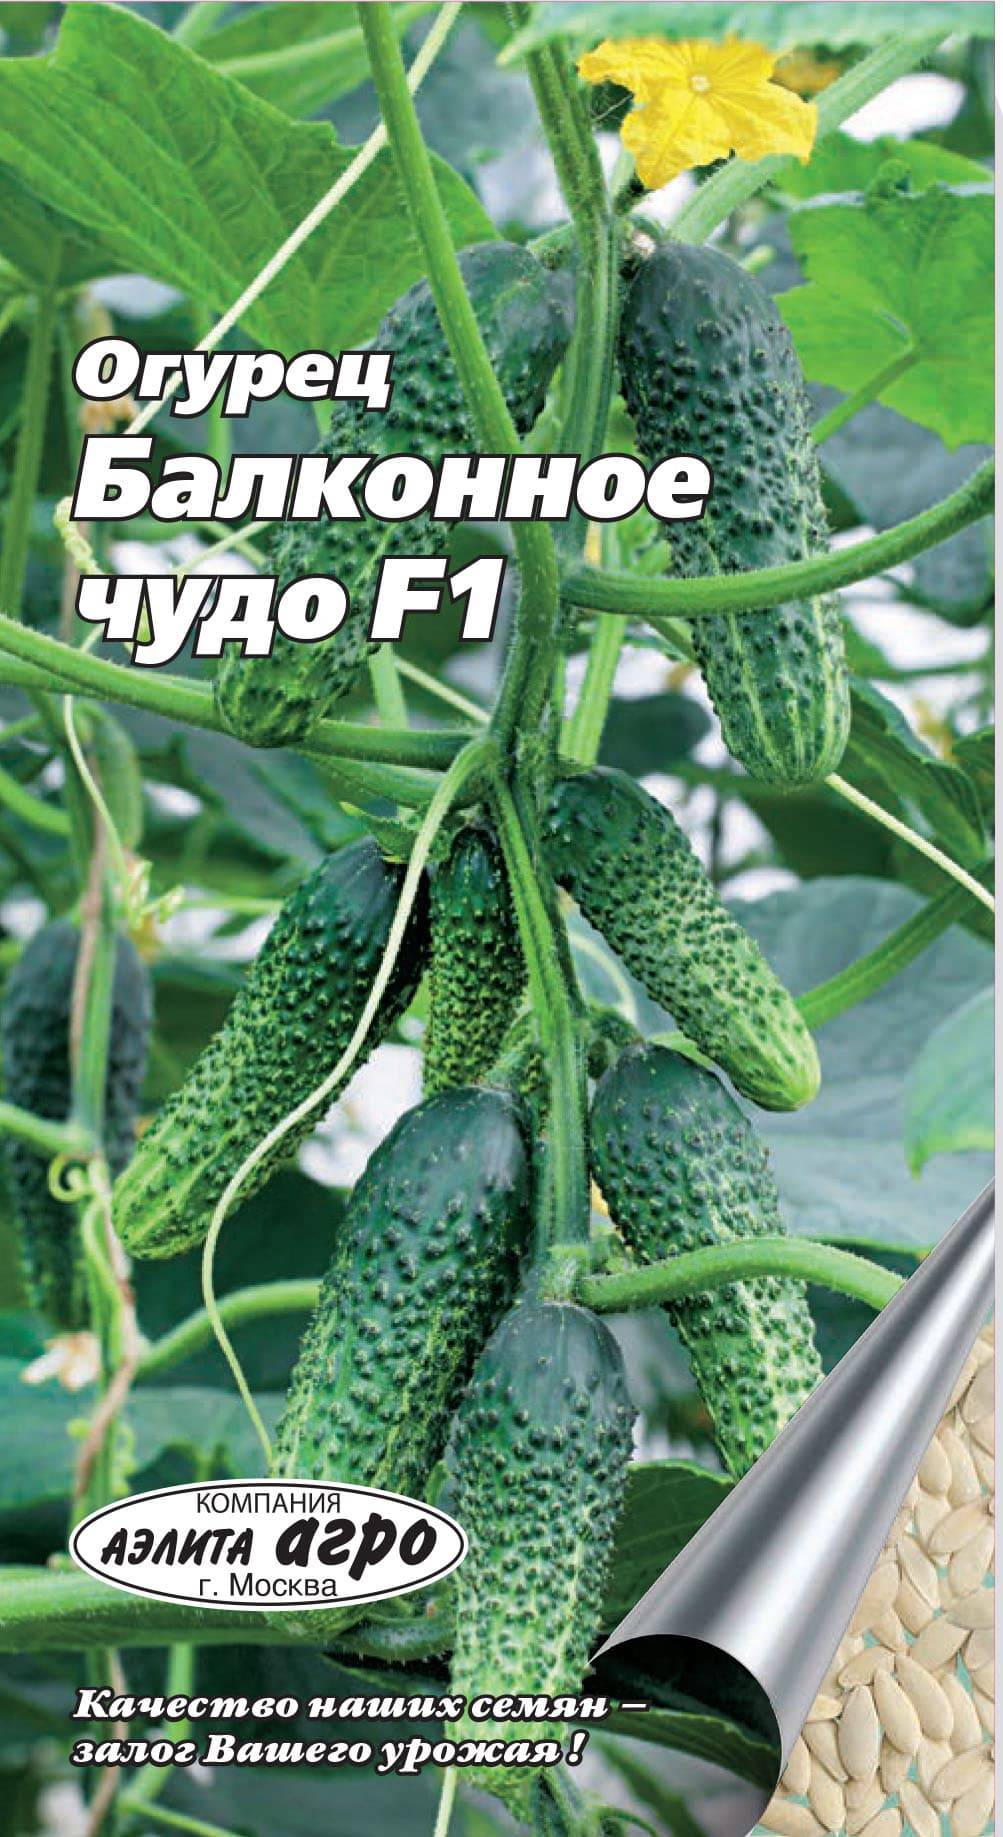 Фото, видео, описание, посадка, характеристика, урожайность, отзывы о гибриде огурцов «балконный f1».